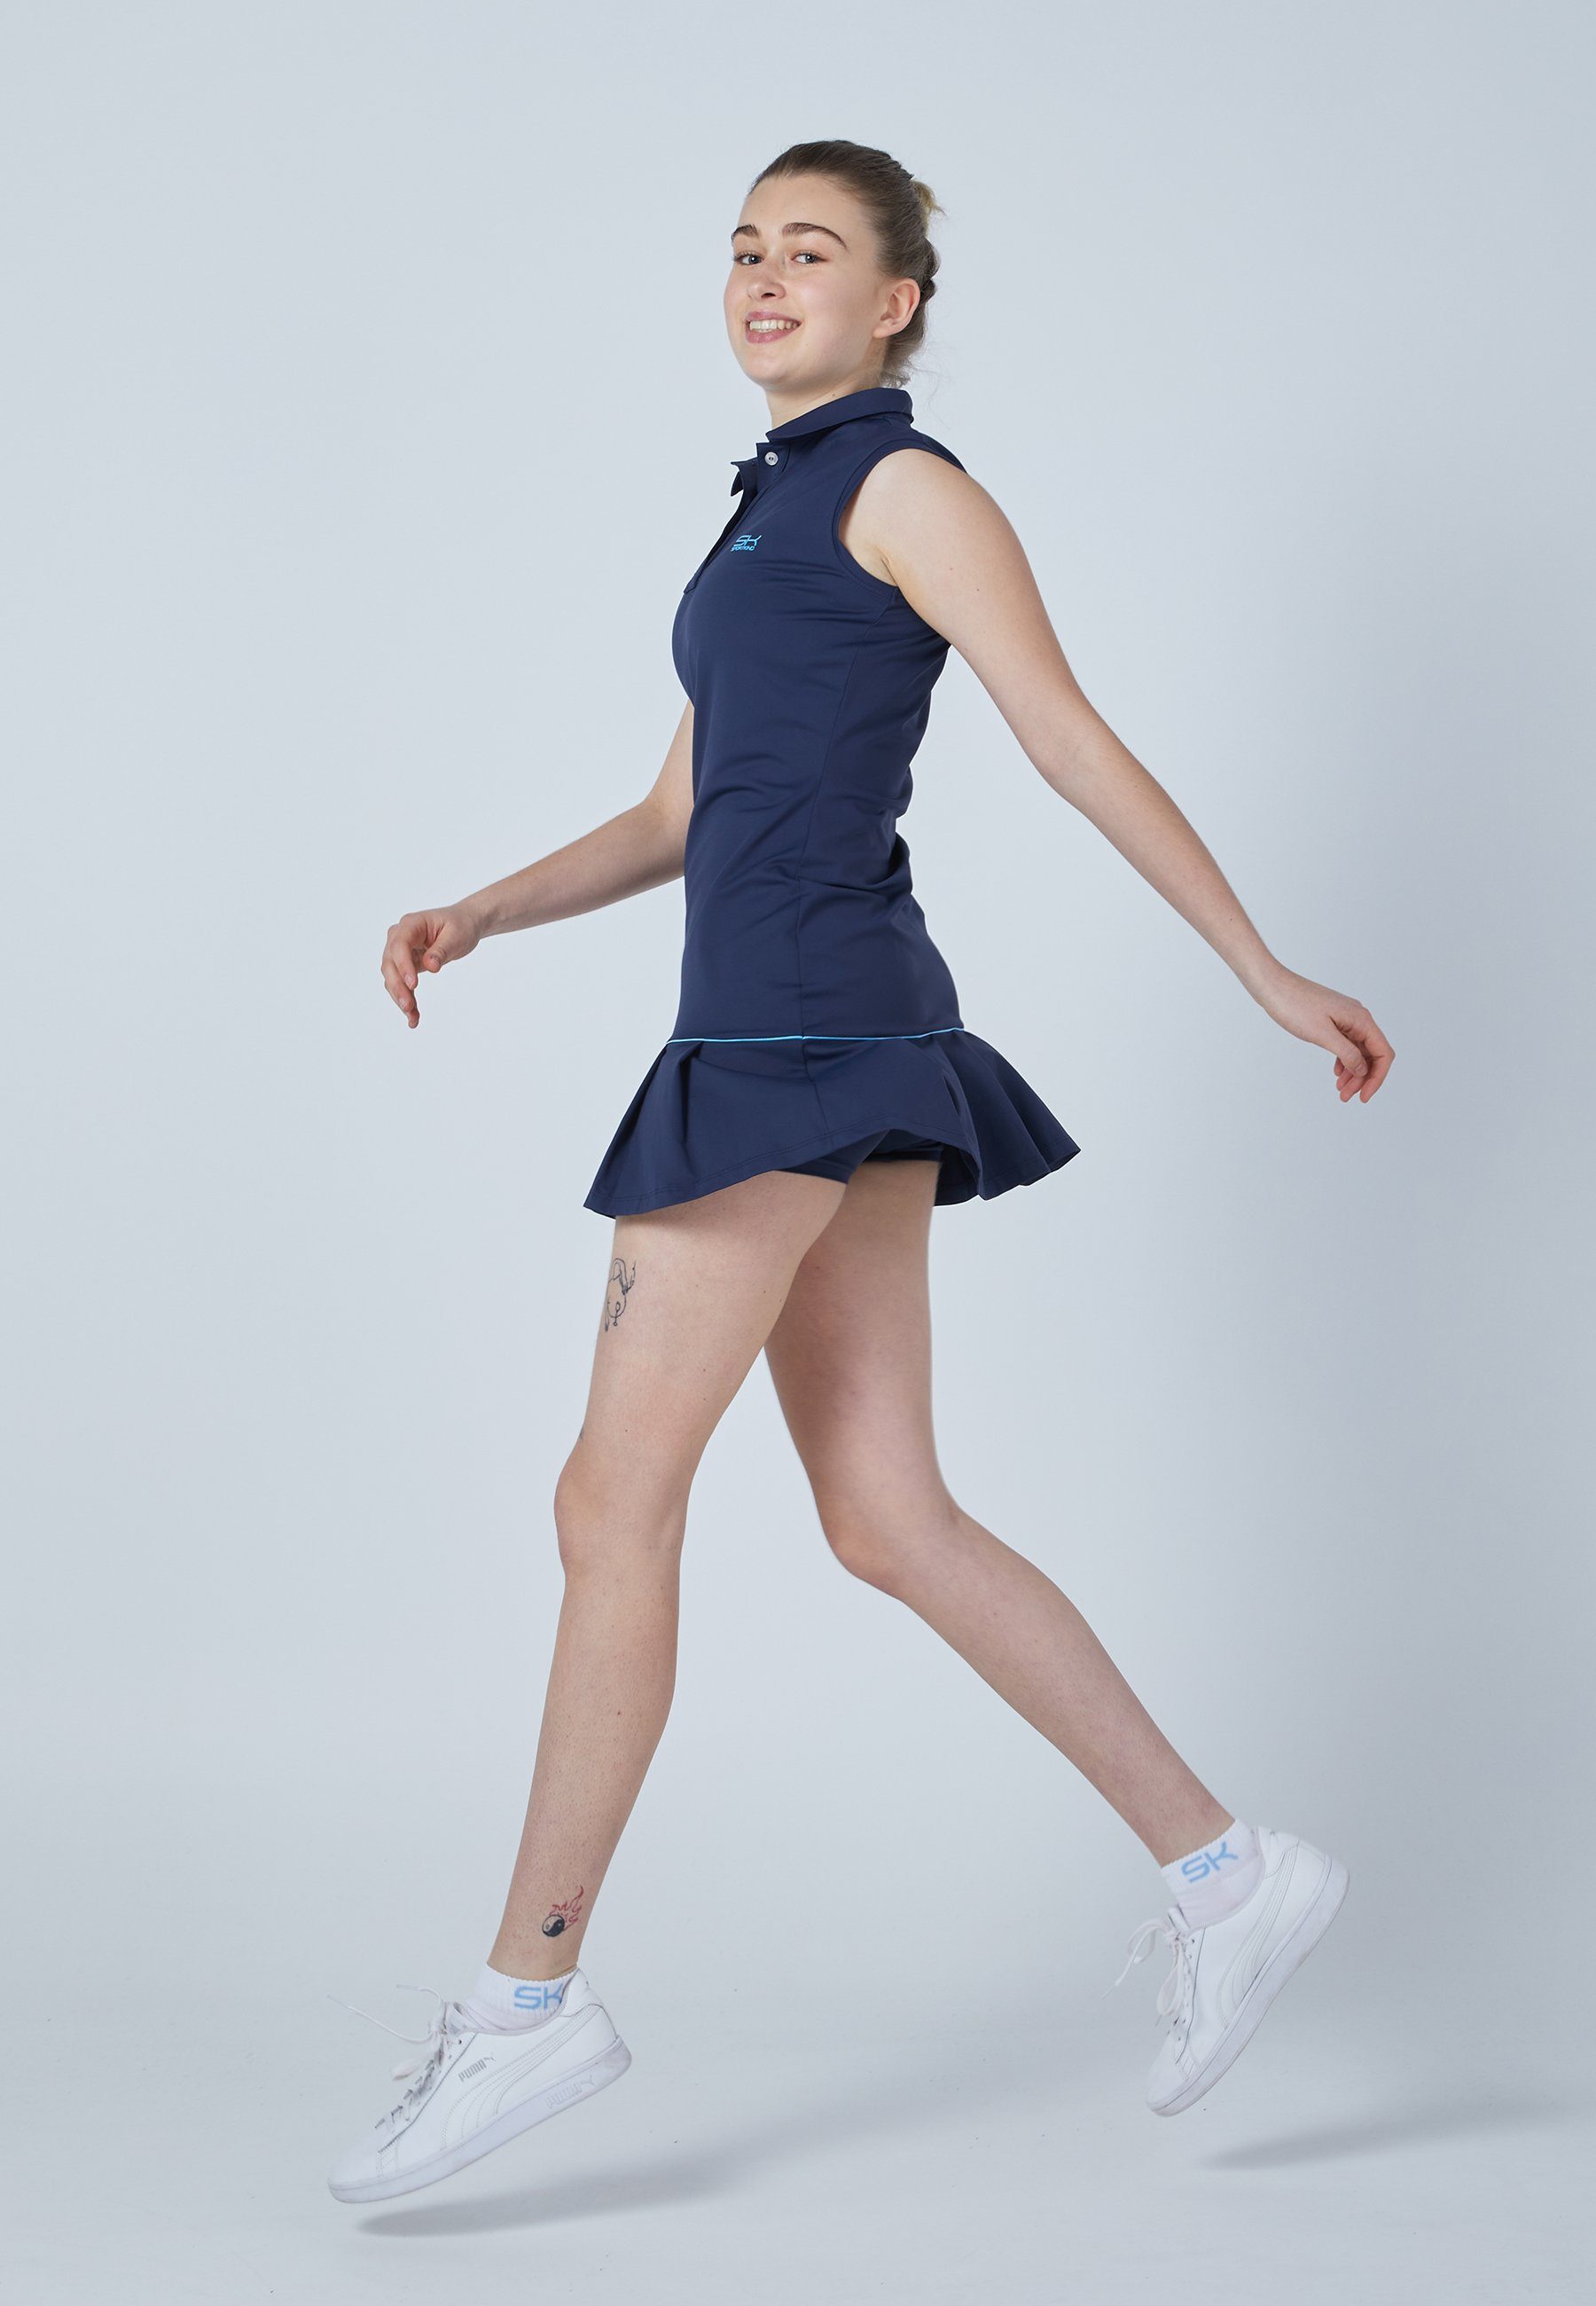 Arm & blau SPORTKIND navy Tenniskleid ohne Golf Kleid Mädchen Polo Damen